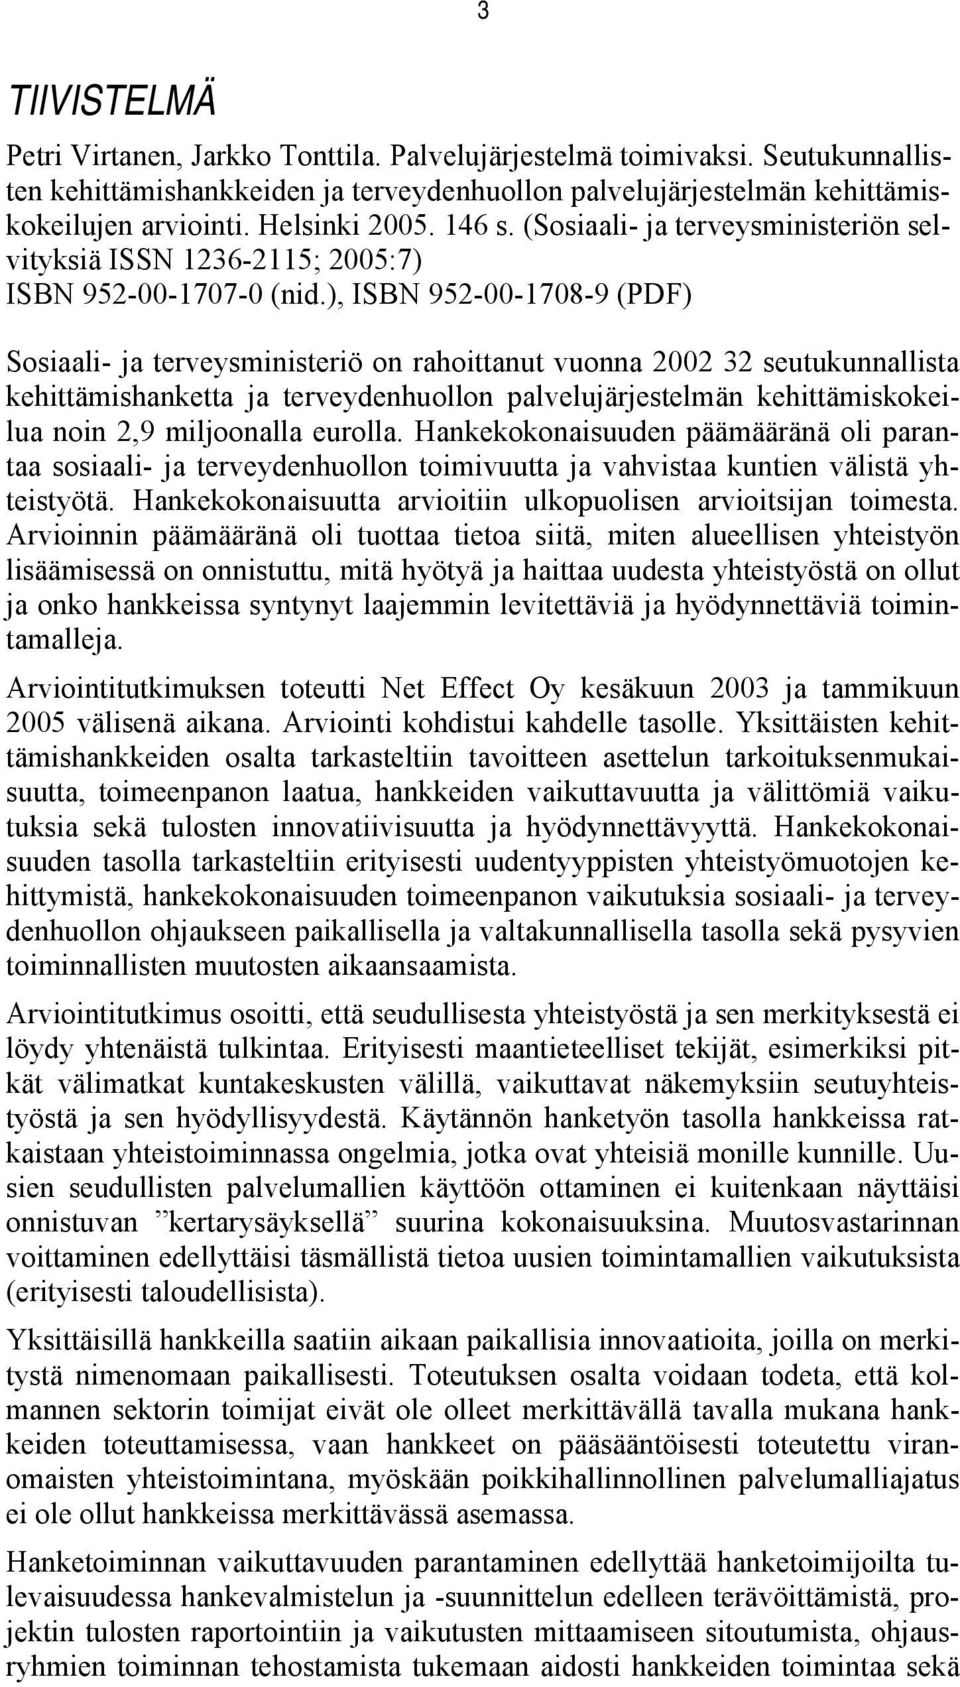 ), ISBN 952-00-1708-9 (PDF) Sosiaali- ja terveysministeriö on rahoittanut vuonna 2002 32 seutukunnallista kehittämishanketta ja terveydenhuollon palvelujärjestelmän kehittämiskokeilua noin 2,9